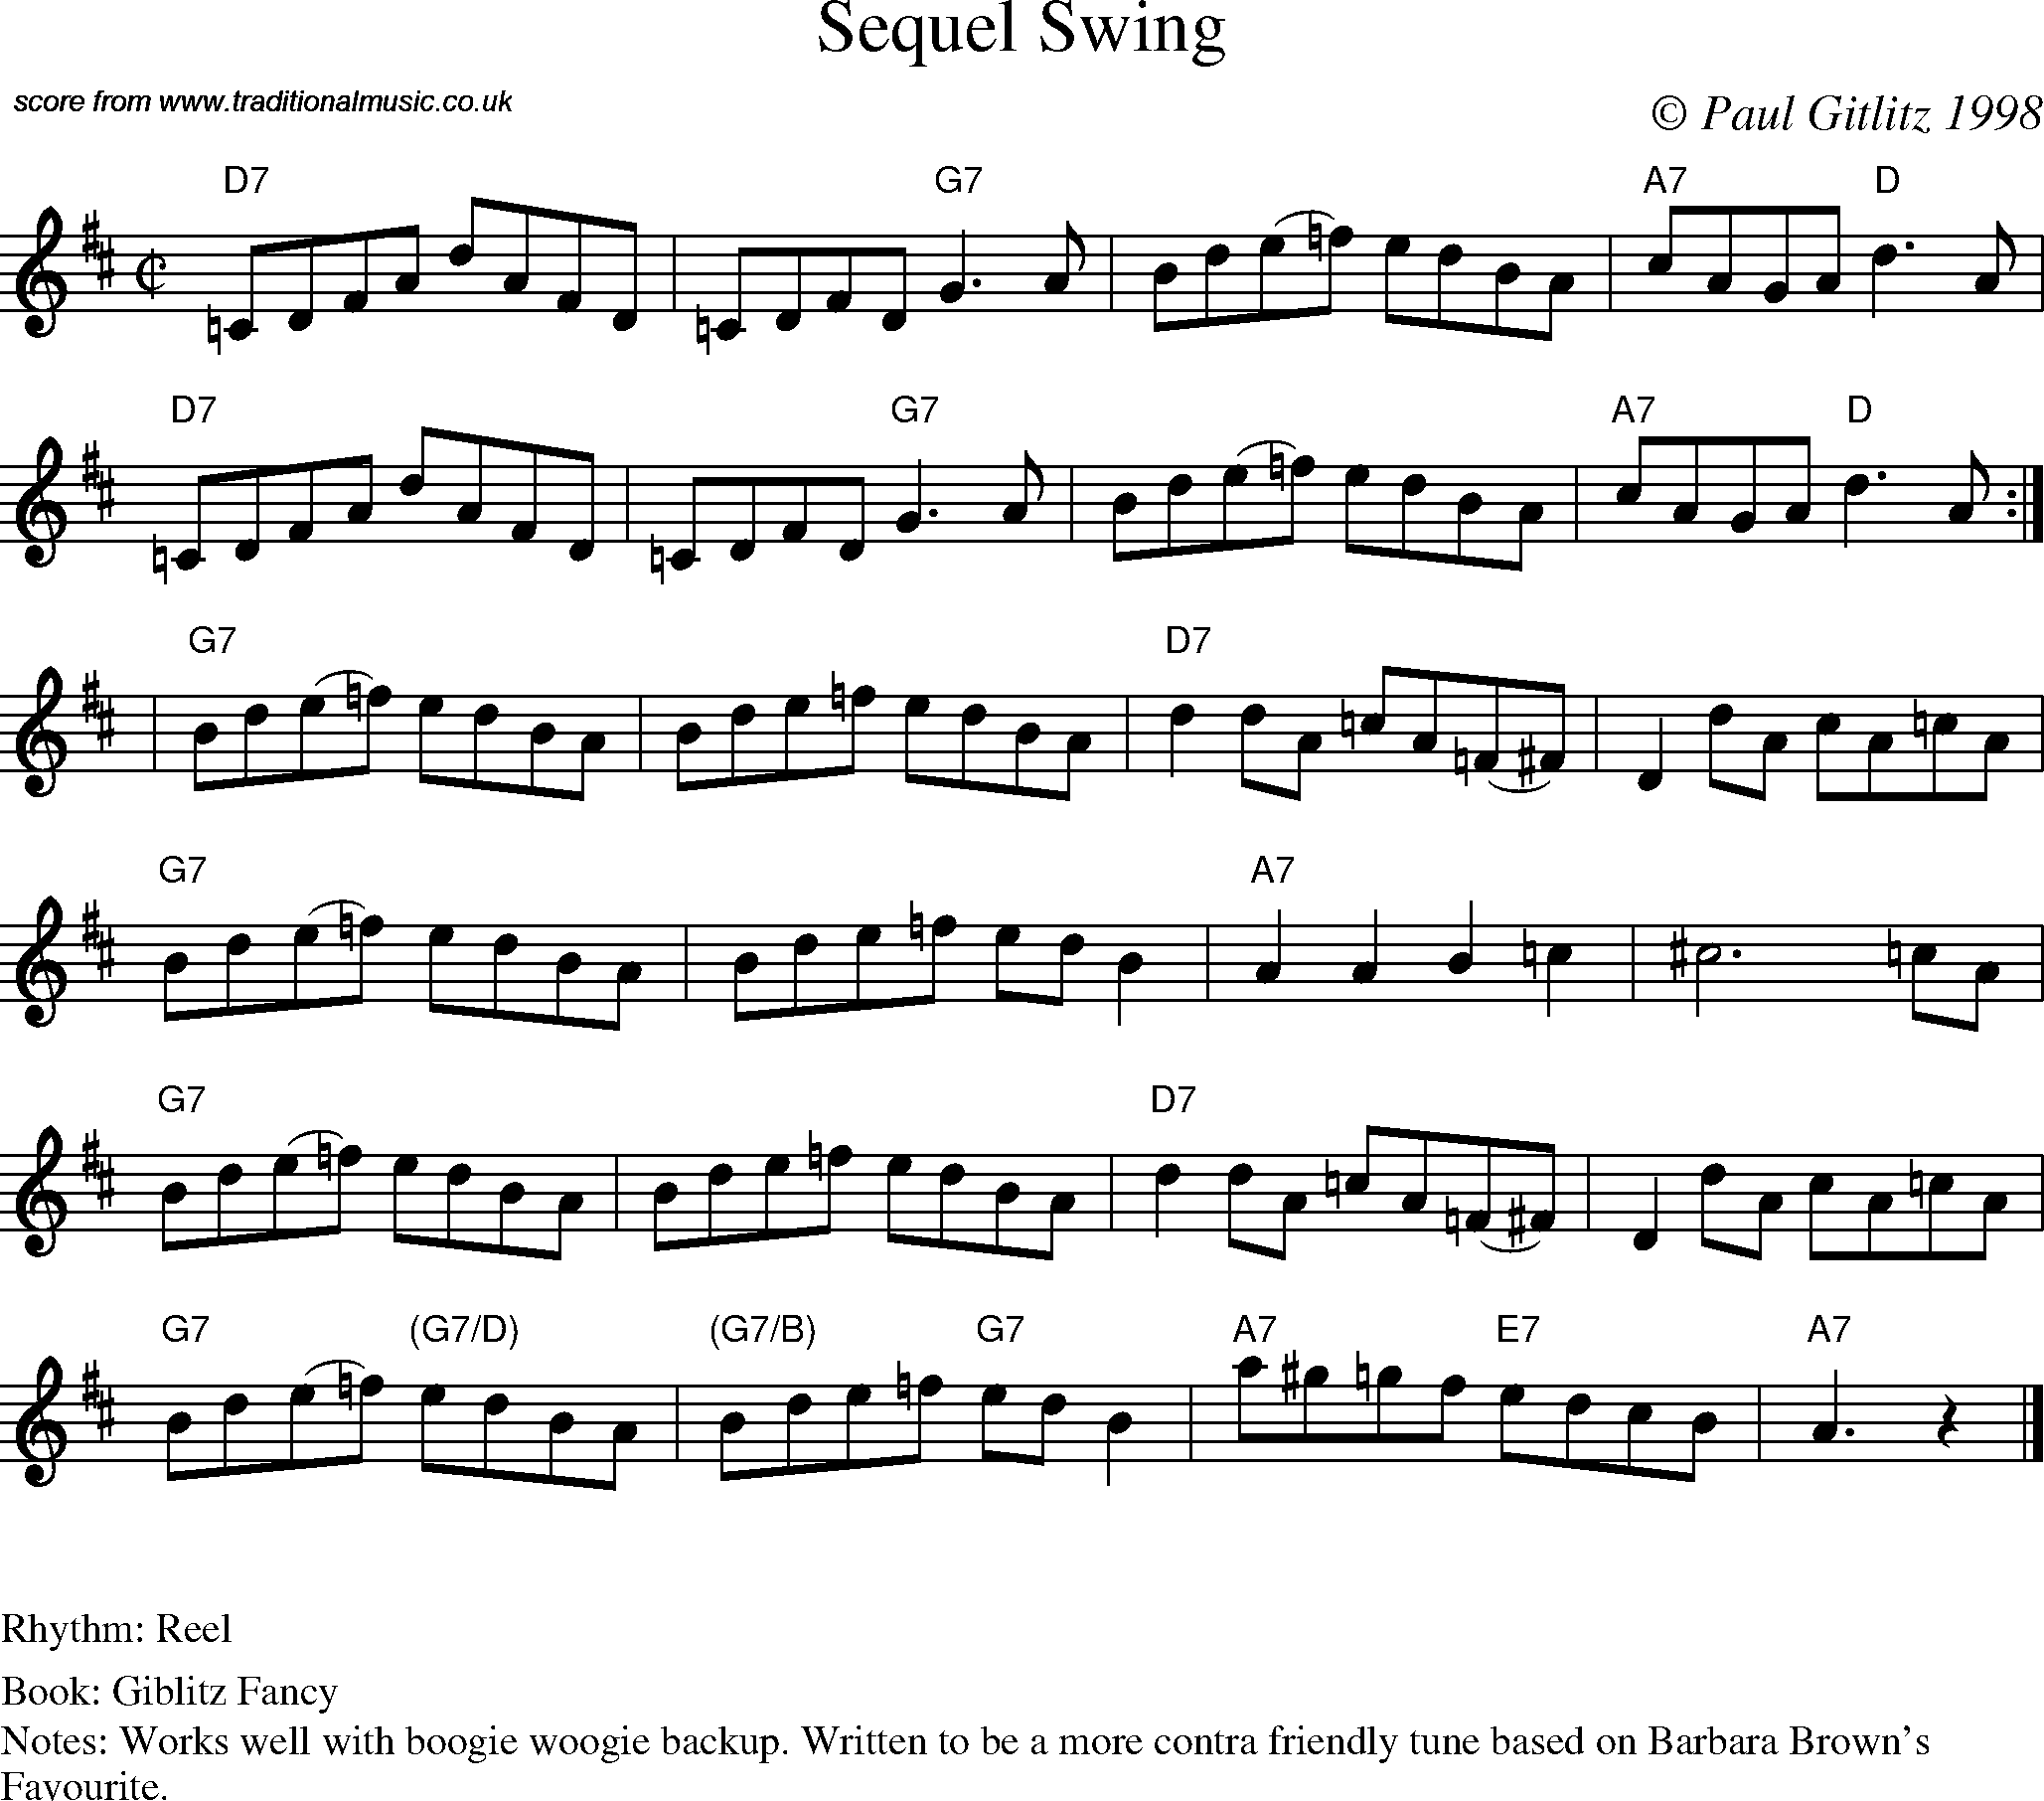 Sheet Music Score for Reel - Sequel Swing